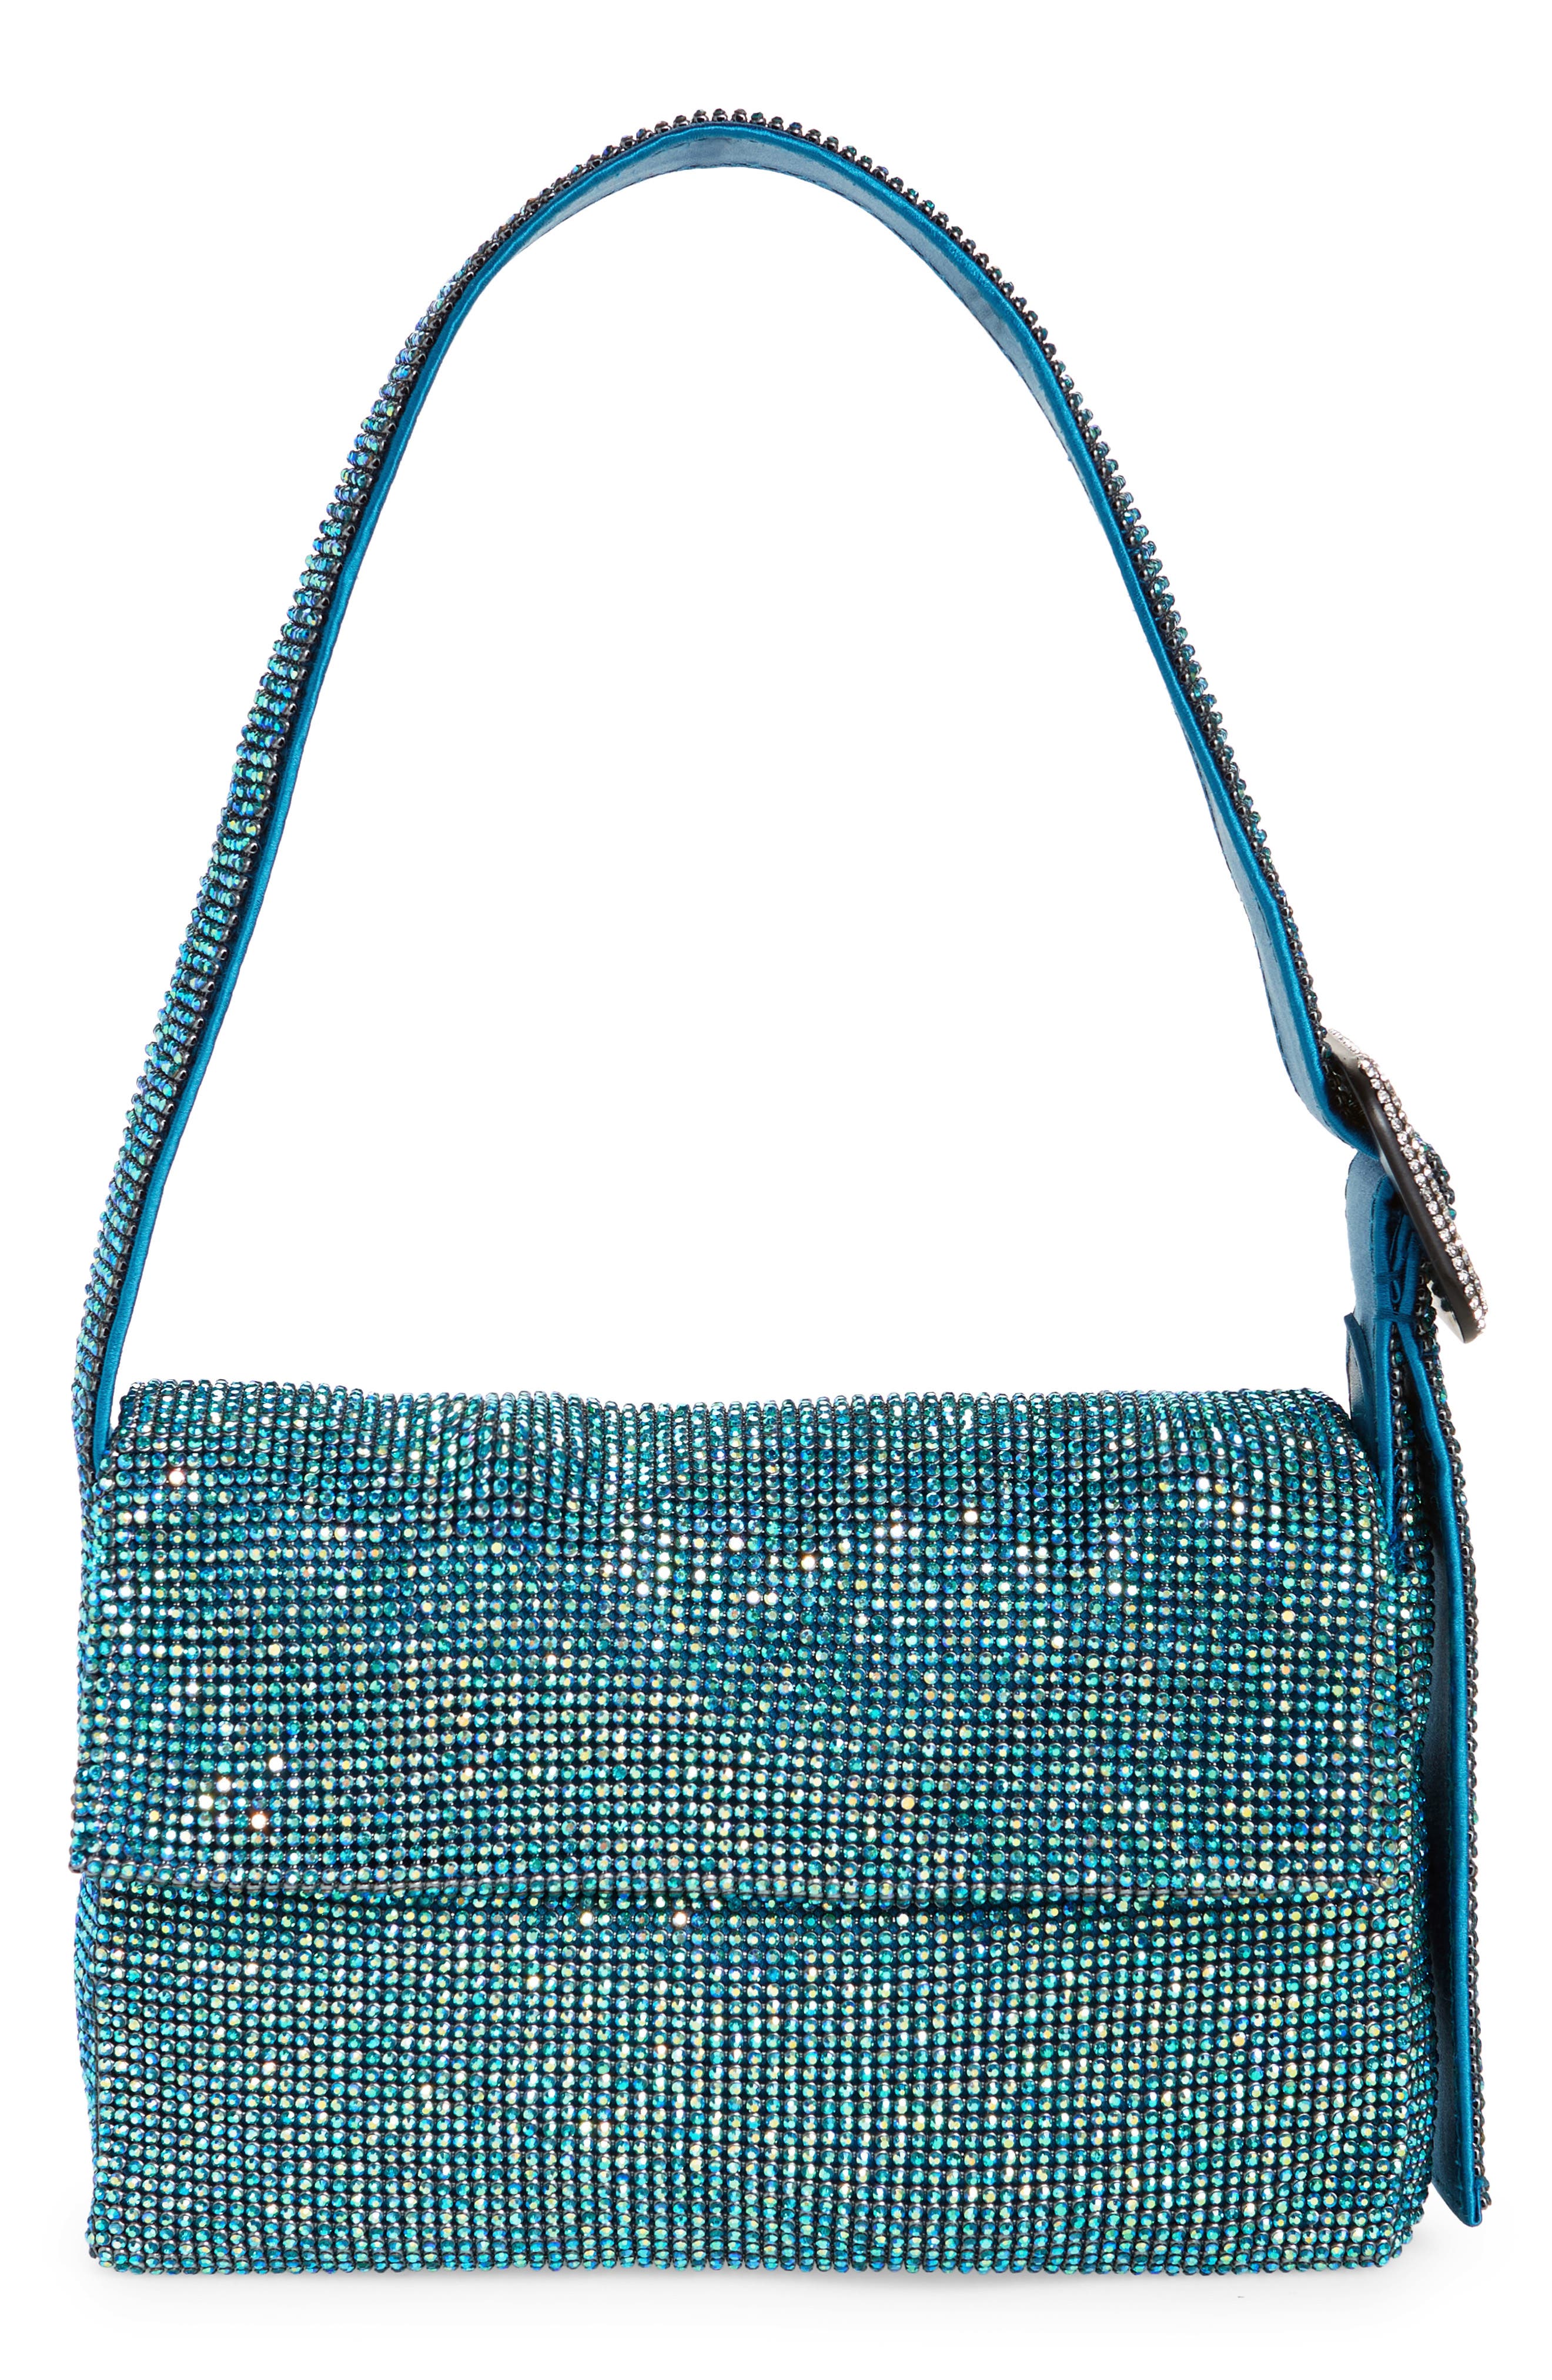 BENEDETTA BRUZZICHES - Vitty La Mignon Crystal-embellished Mini Bag